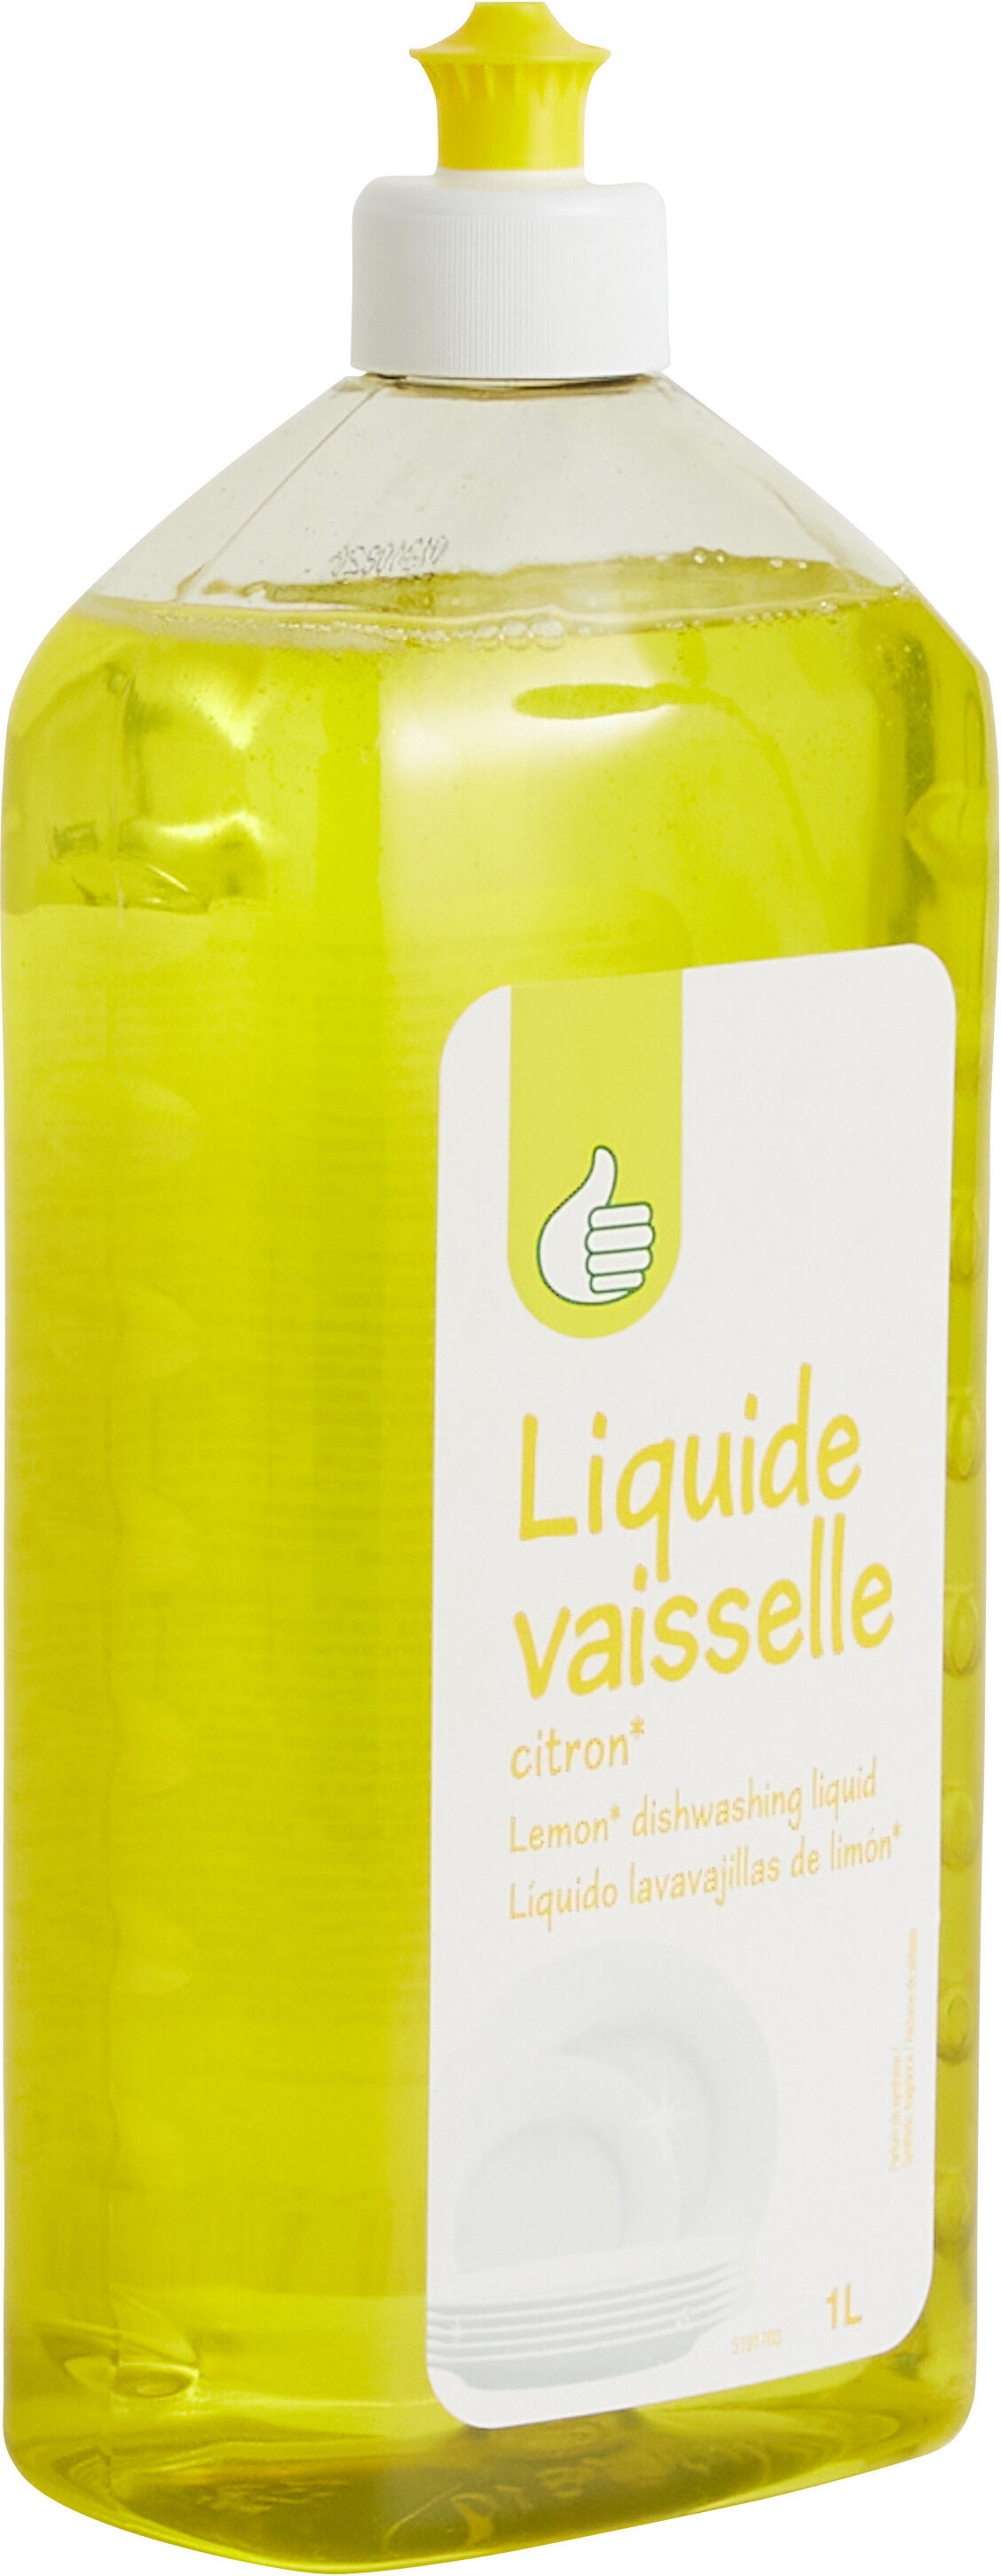 Liquide vaisselle - Produit - fr